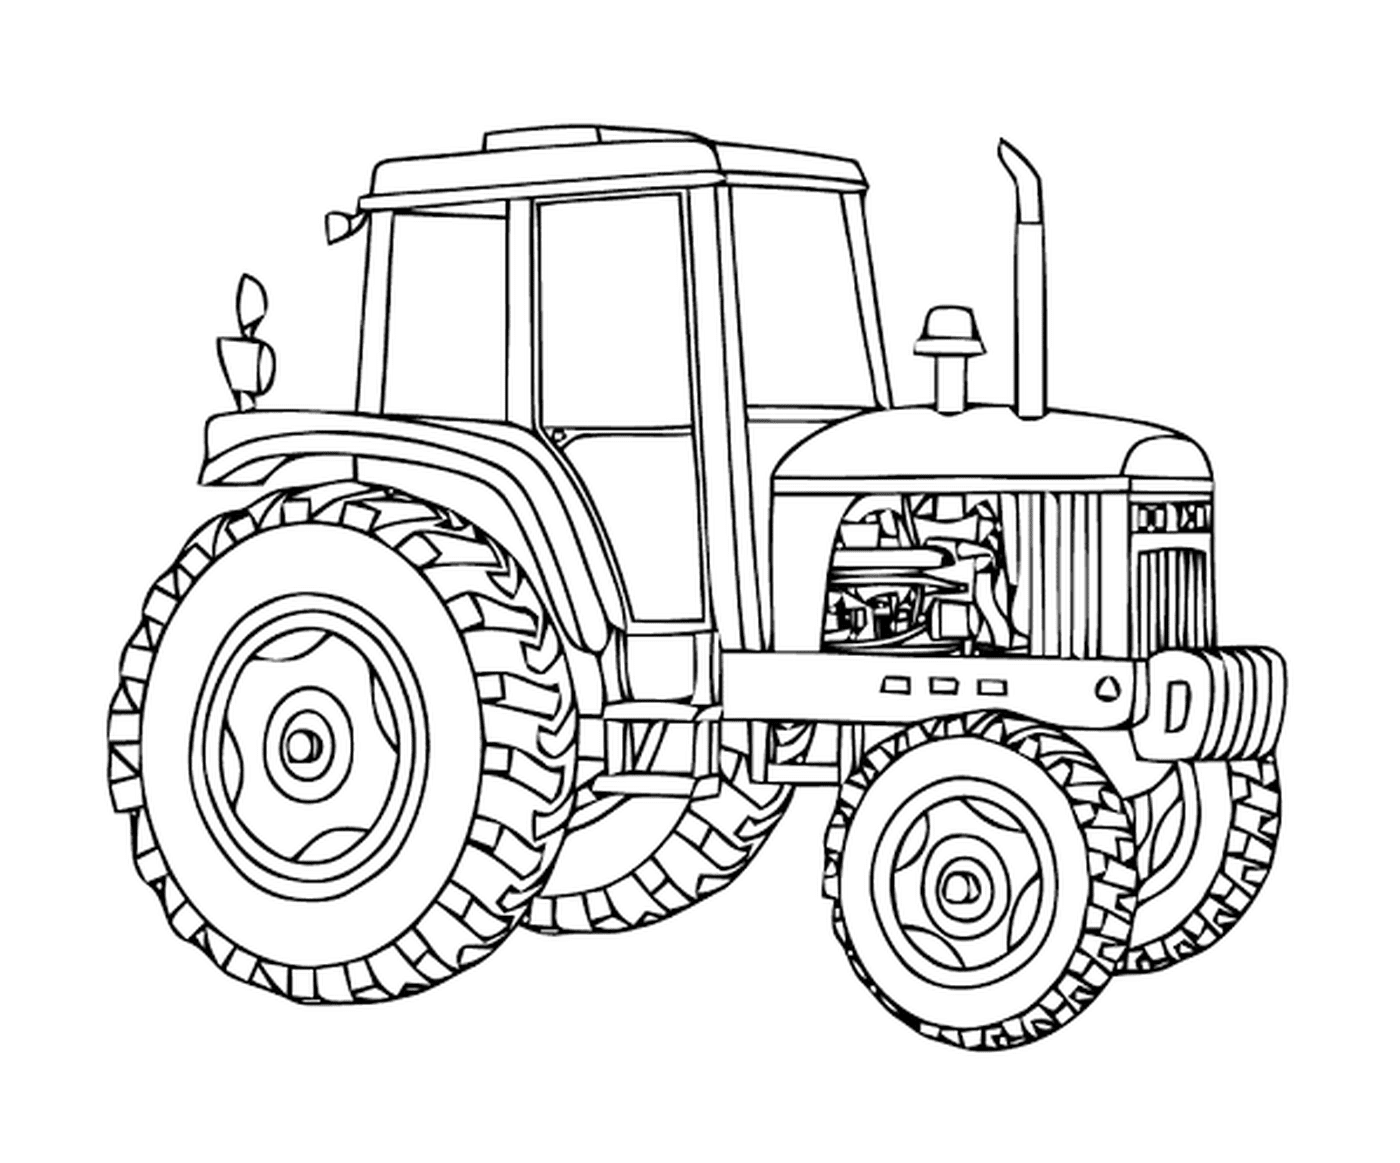  Massey Ferguson Tractor, potente veicolo agricolo 